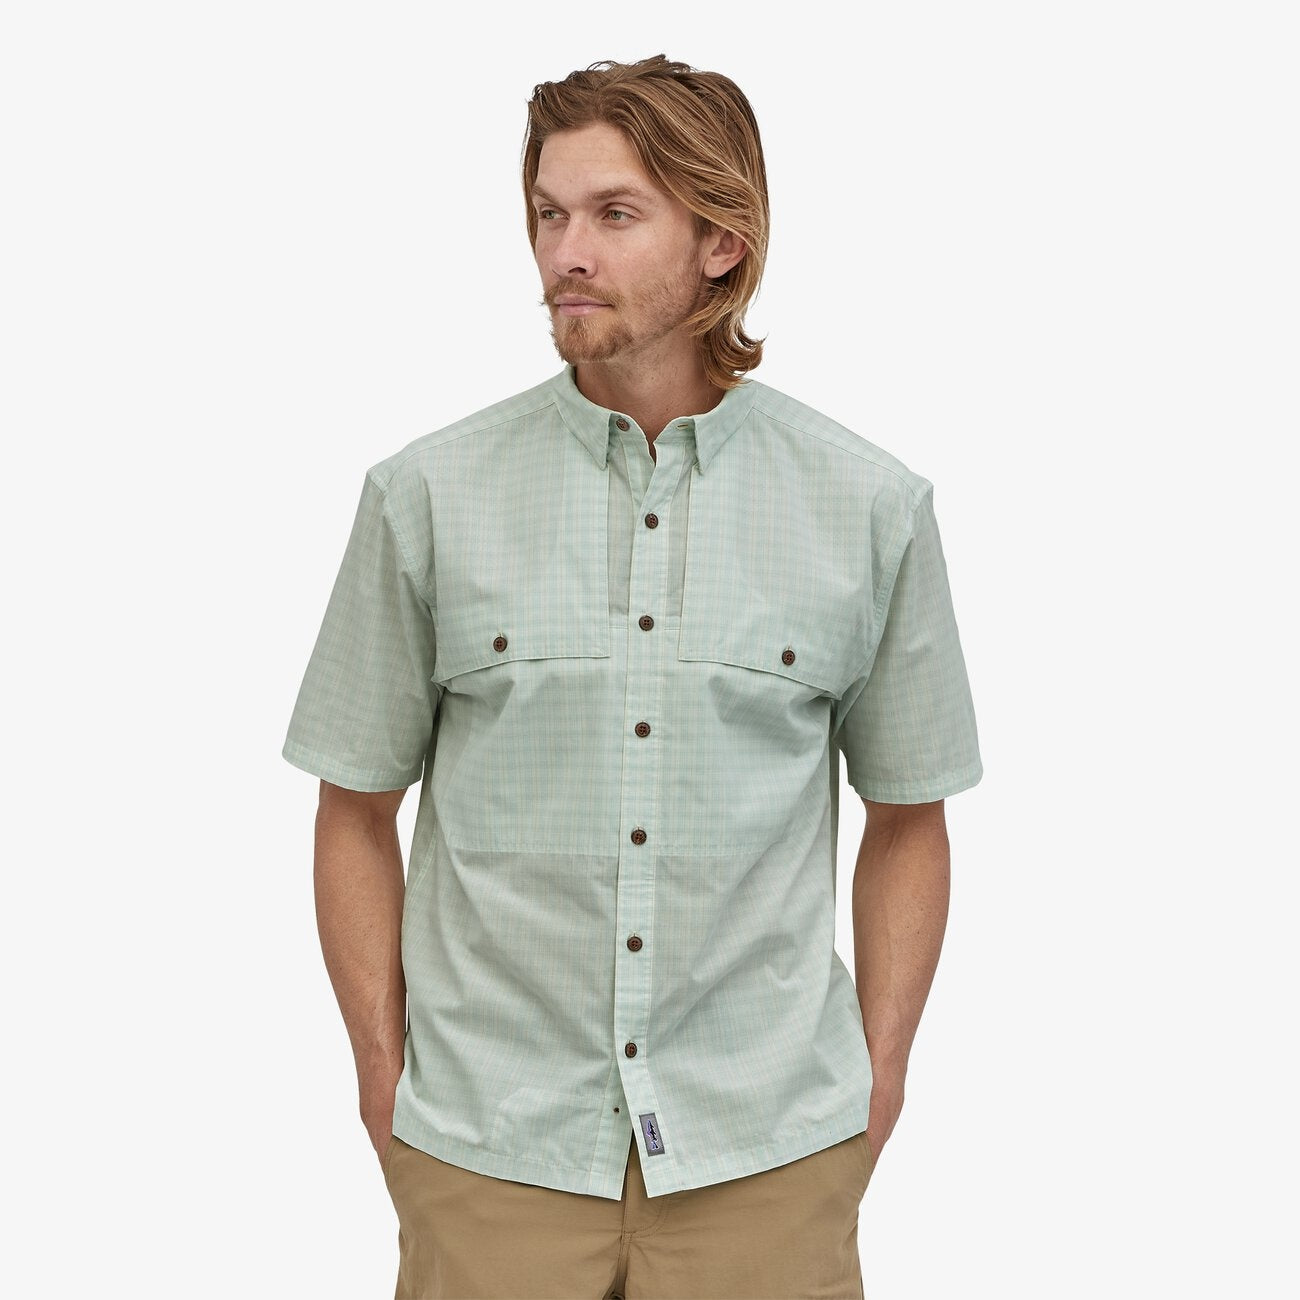 M's S/S Island Hopper Shirt